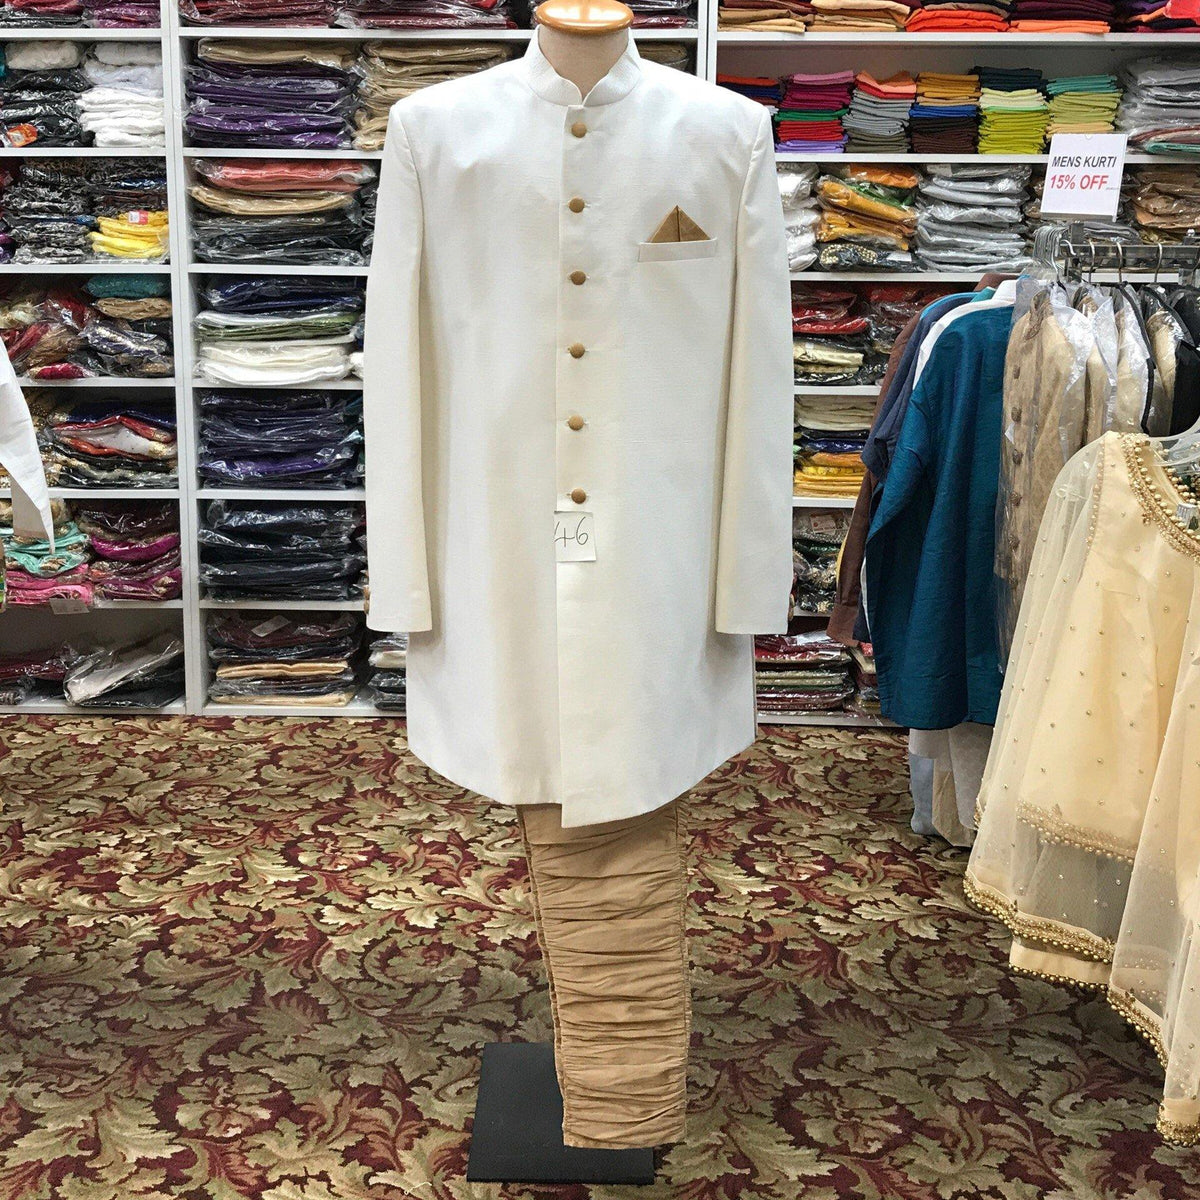 Sherwani pajama size 46 - Mirage Sari Center